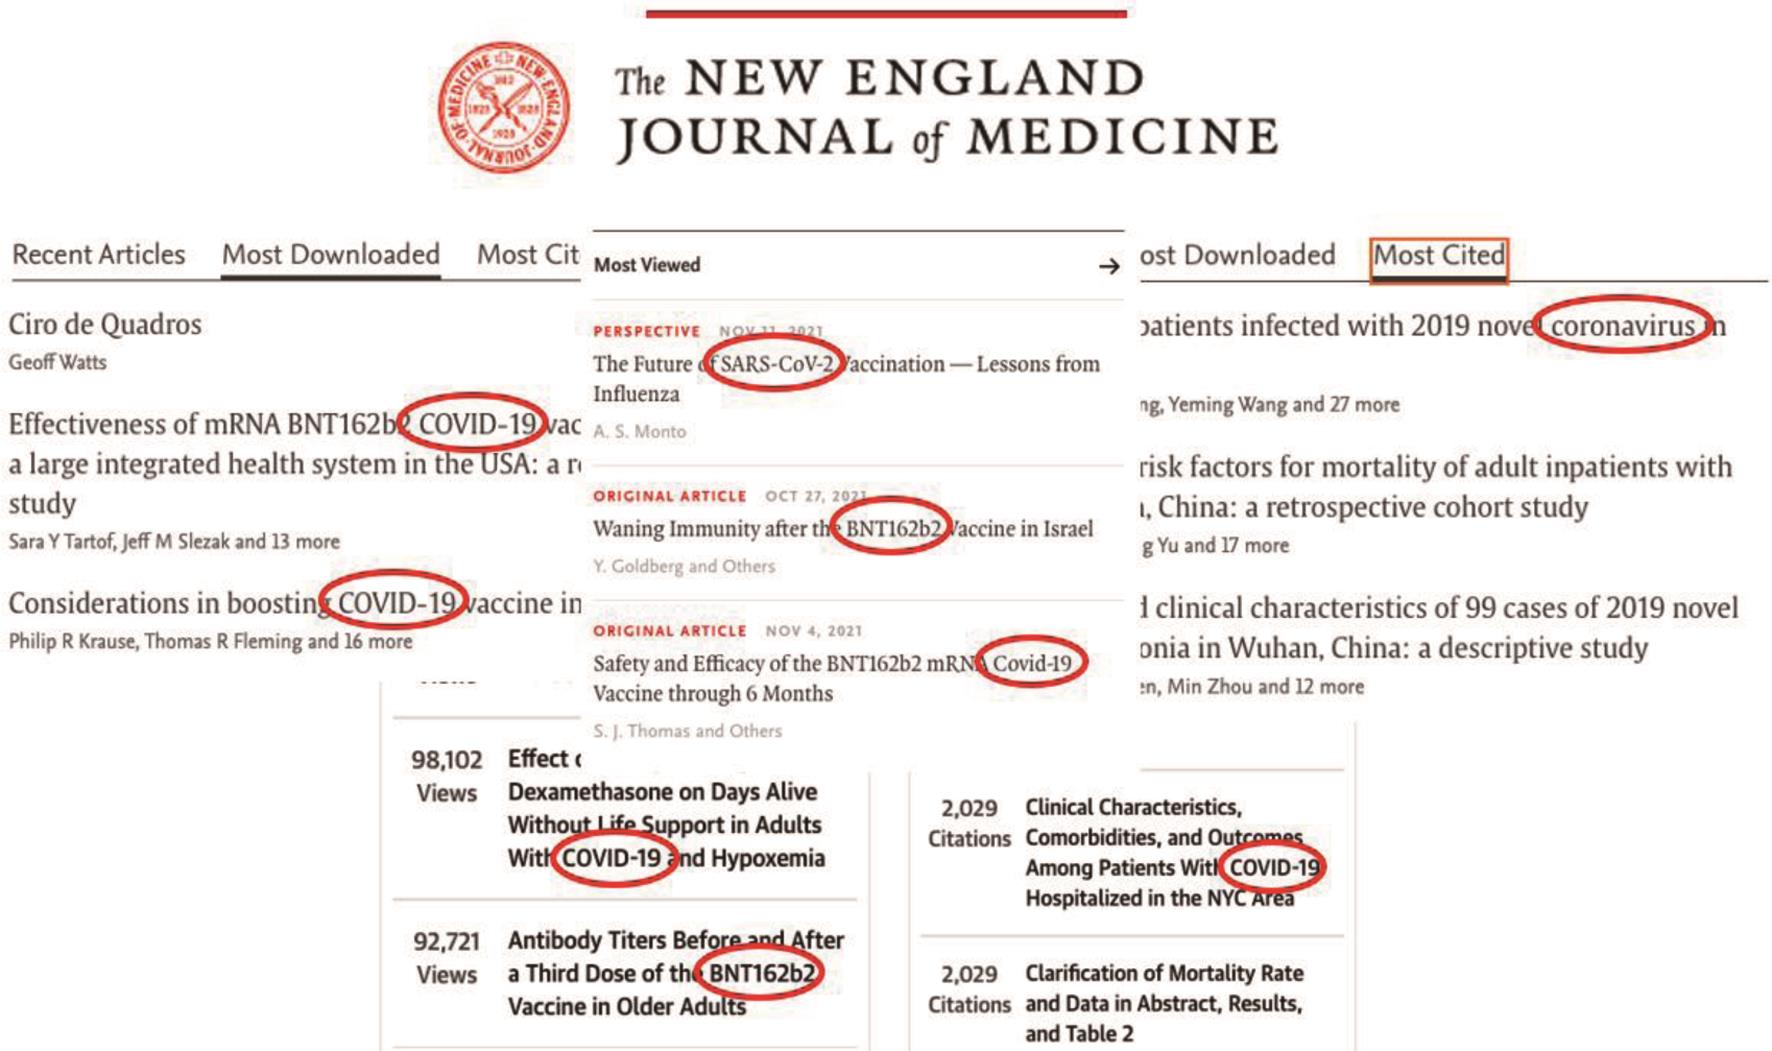 新英格兰医学杂志上浏览次数最多、下载次数最多、引用次数最多的文章。